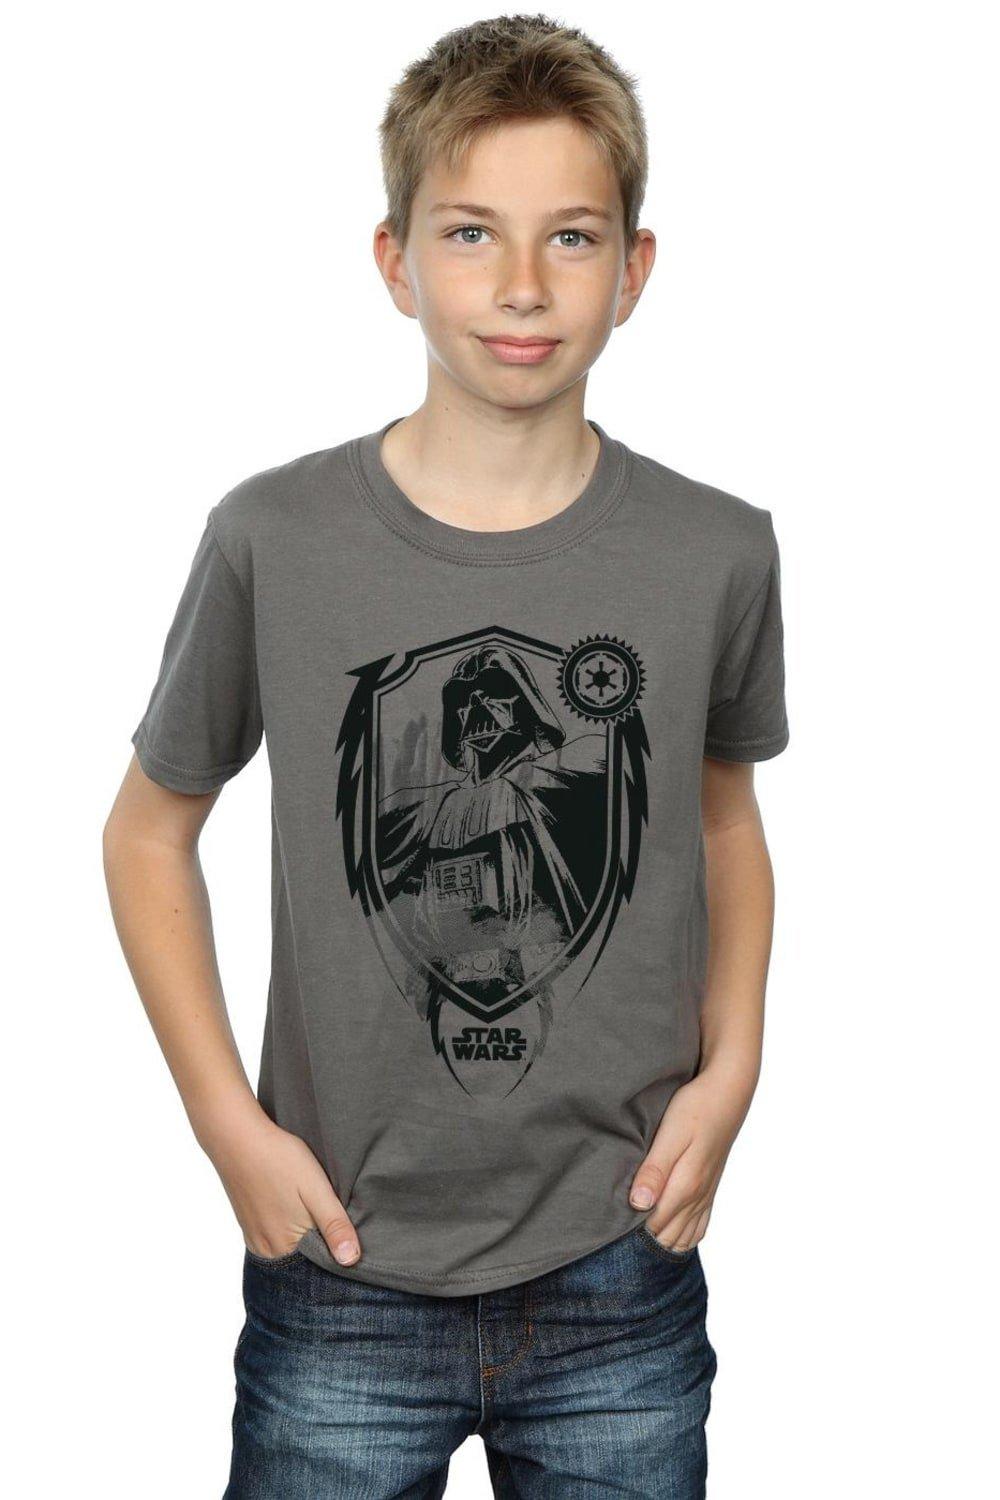 Darth Vader Shield T-Shirt